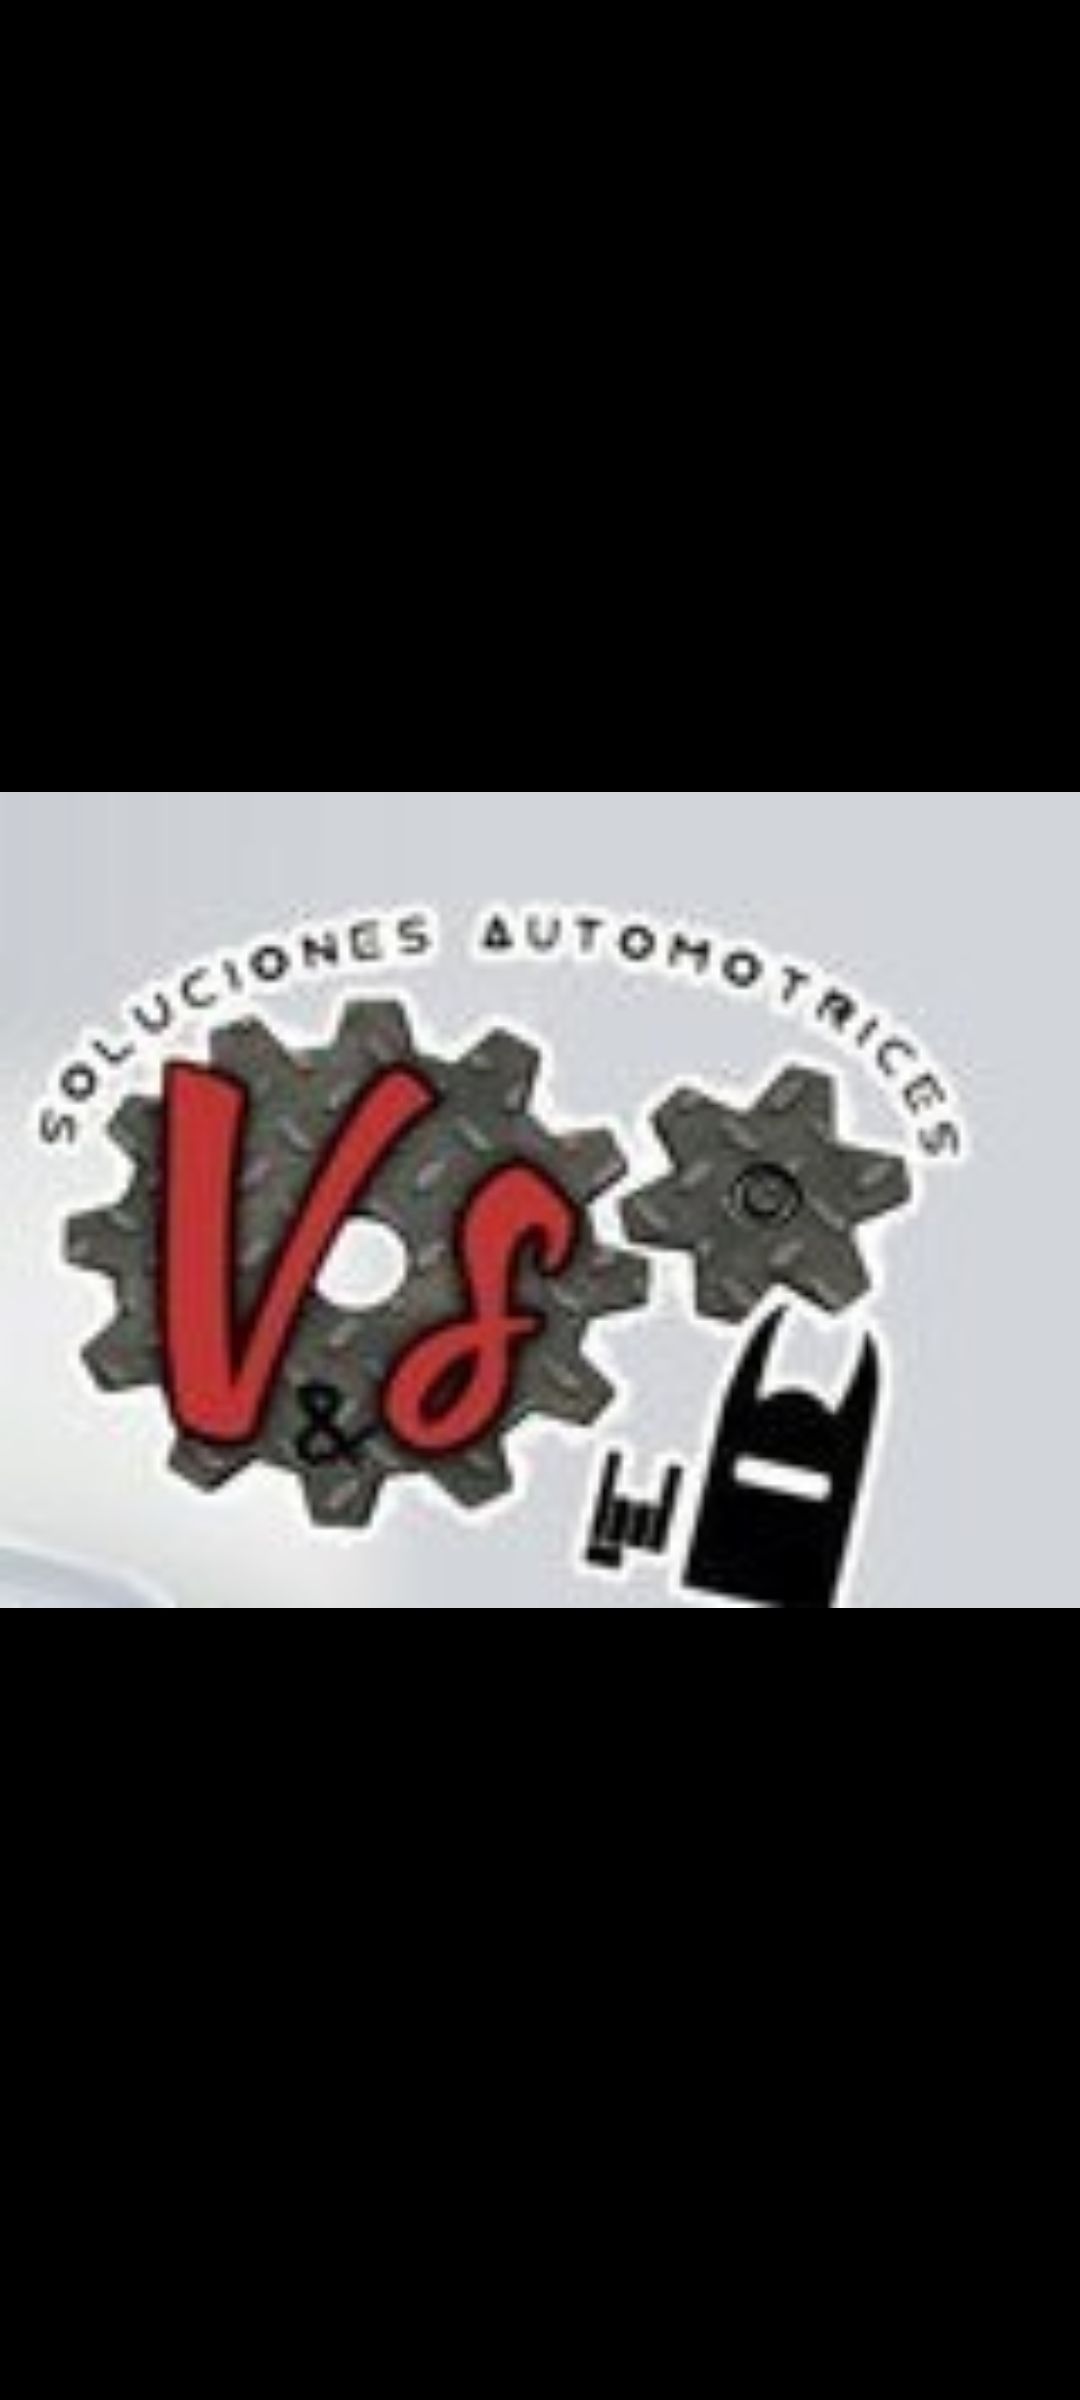 Soluciones automotrices "V&S" 